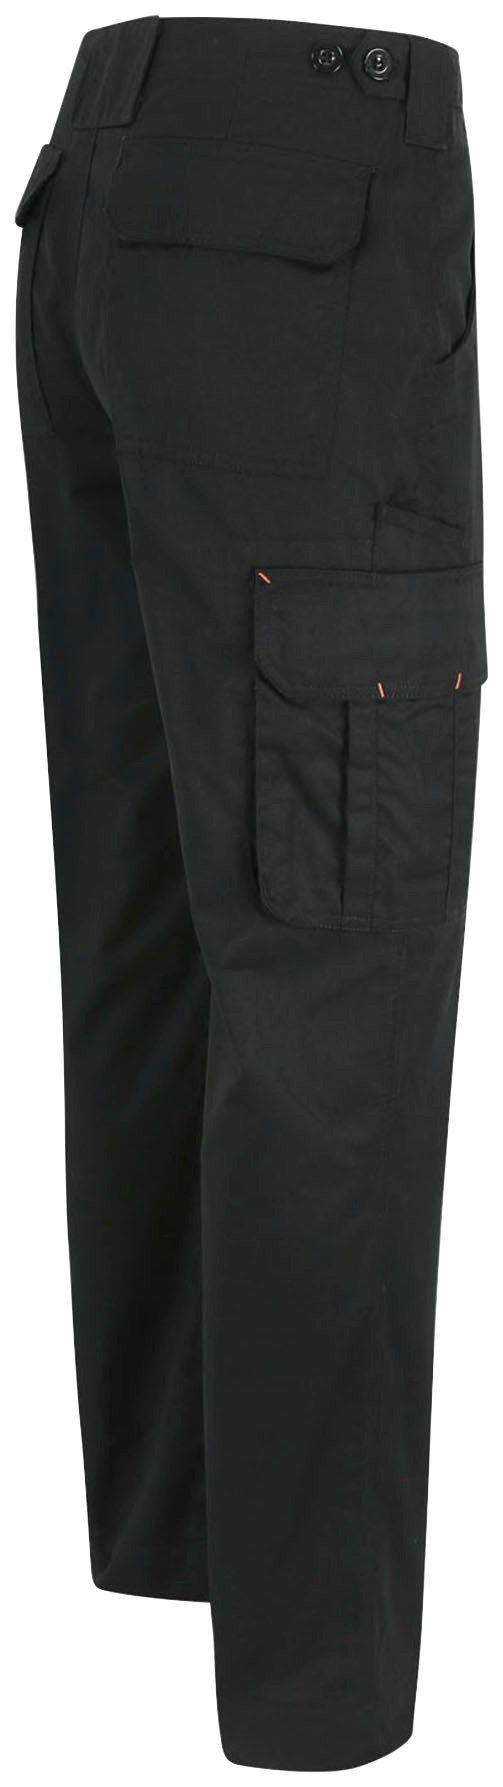 viele Arbeitshose leicht, einstellbarer schwarz Farben Hose Herock 7 Bund, Thor Taschen, Wasserabweisend,